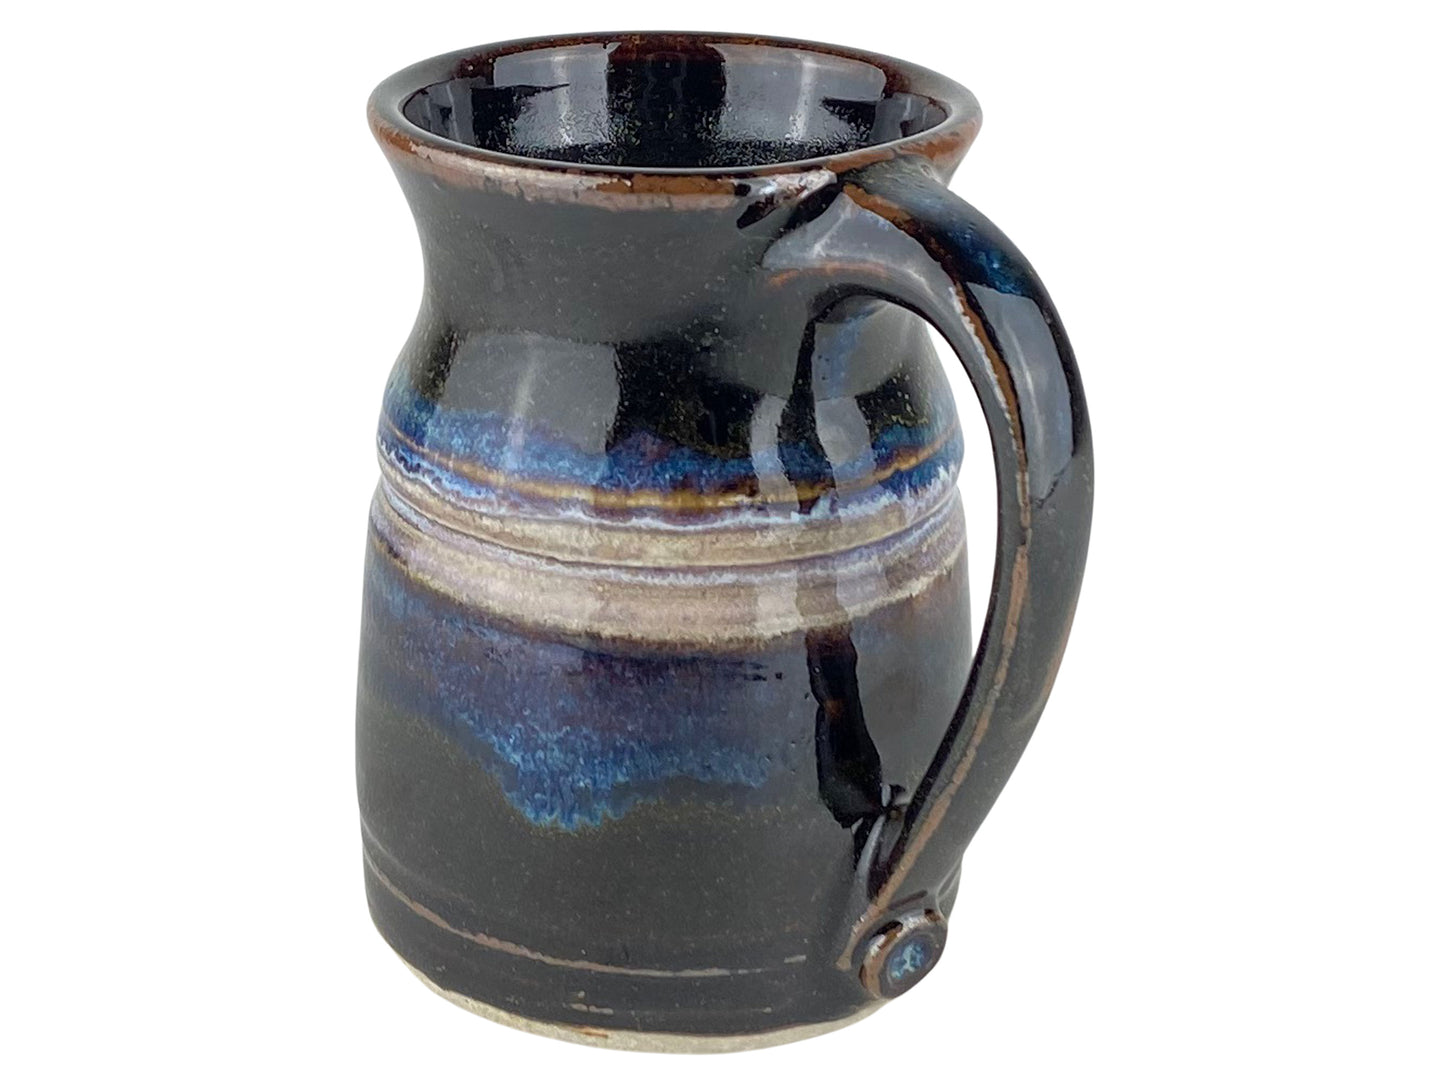 16 oz. Stoneware Coffee Mug